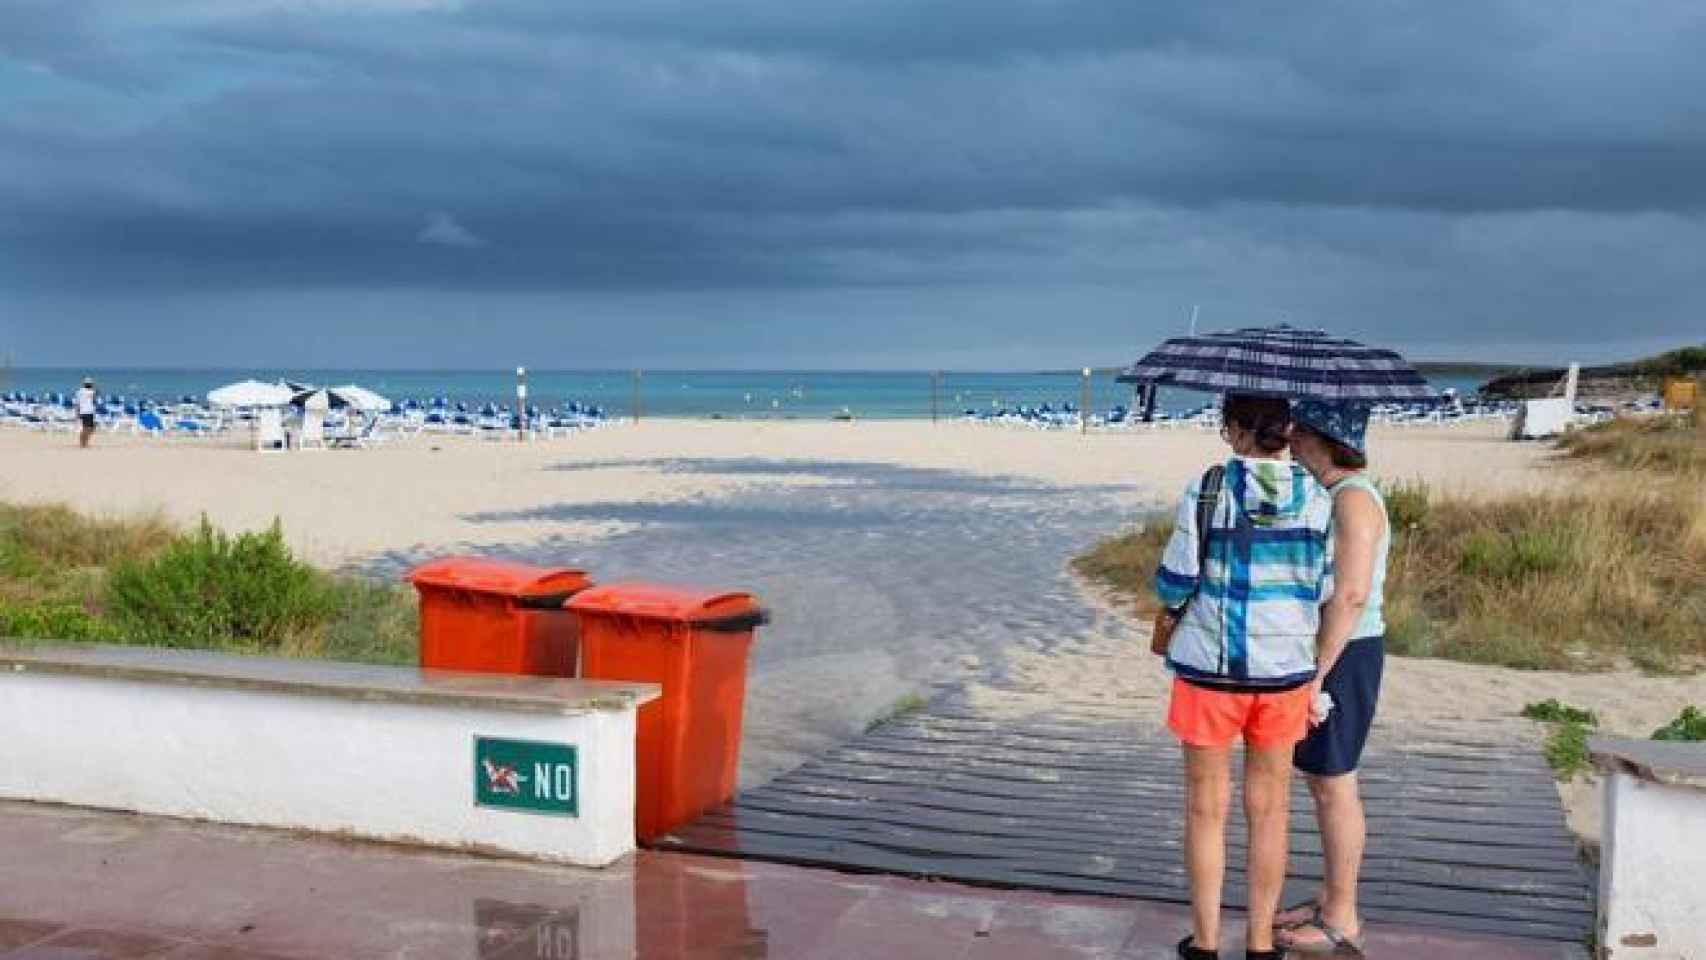 Dos mujeres se resguardan de la lluvia en una playa de Menorca / David Arquimbau Sintes. EFE